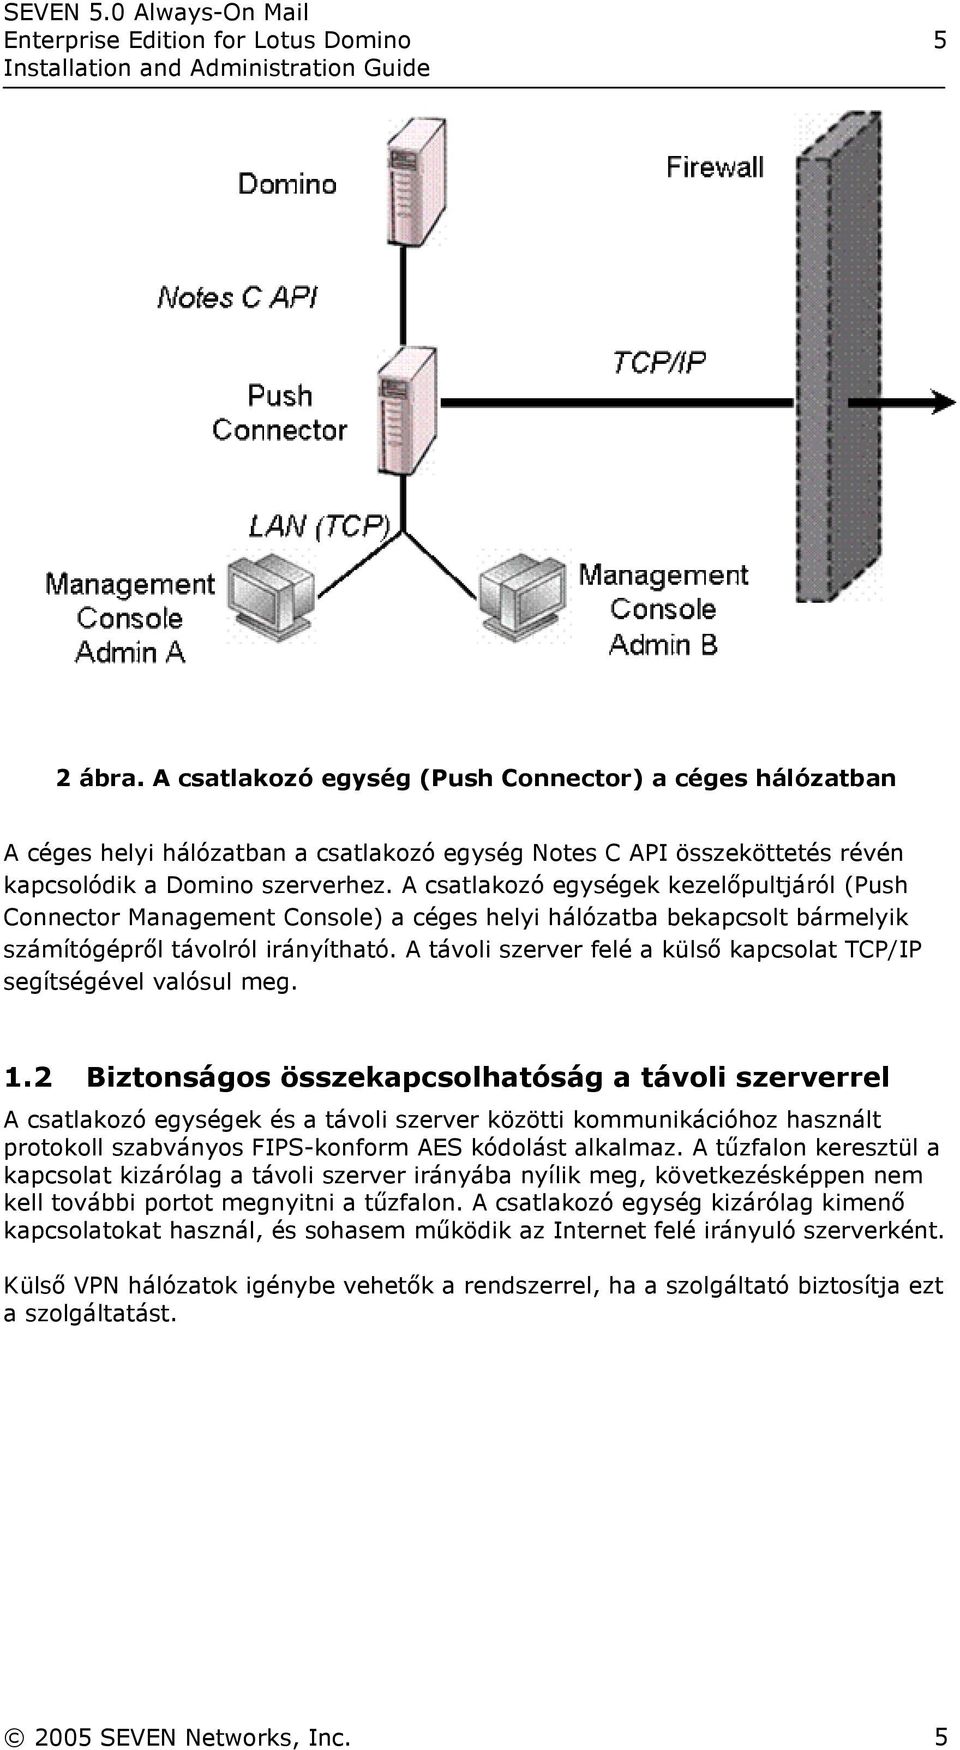 A csatlakozó egységek kezelőpultjáról (Push Connector Management Console) a céges helyi hálózatba bekapcsolt bármelyik számítógépről távolról irányítható.